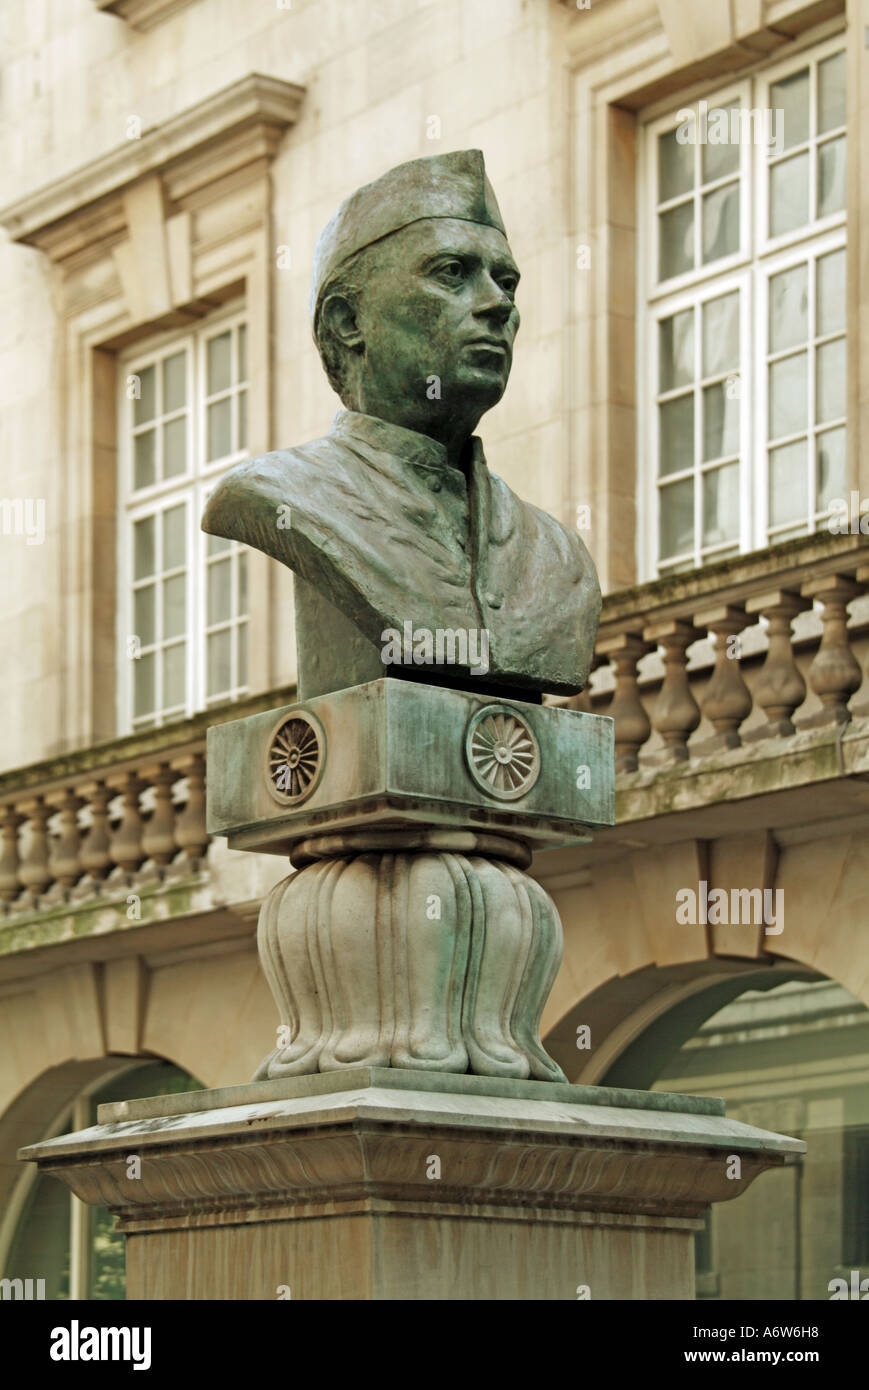 Buste de Londres, Jawaharlal Nehru, premier ministre de l'Inde de 1947 à 1964 Banque D'Images